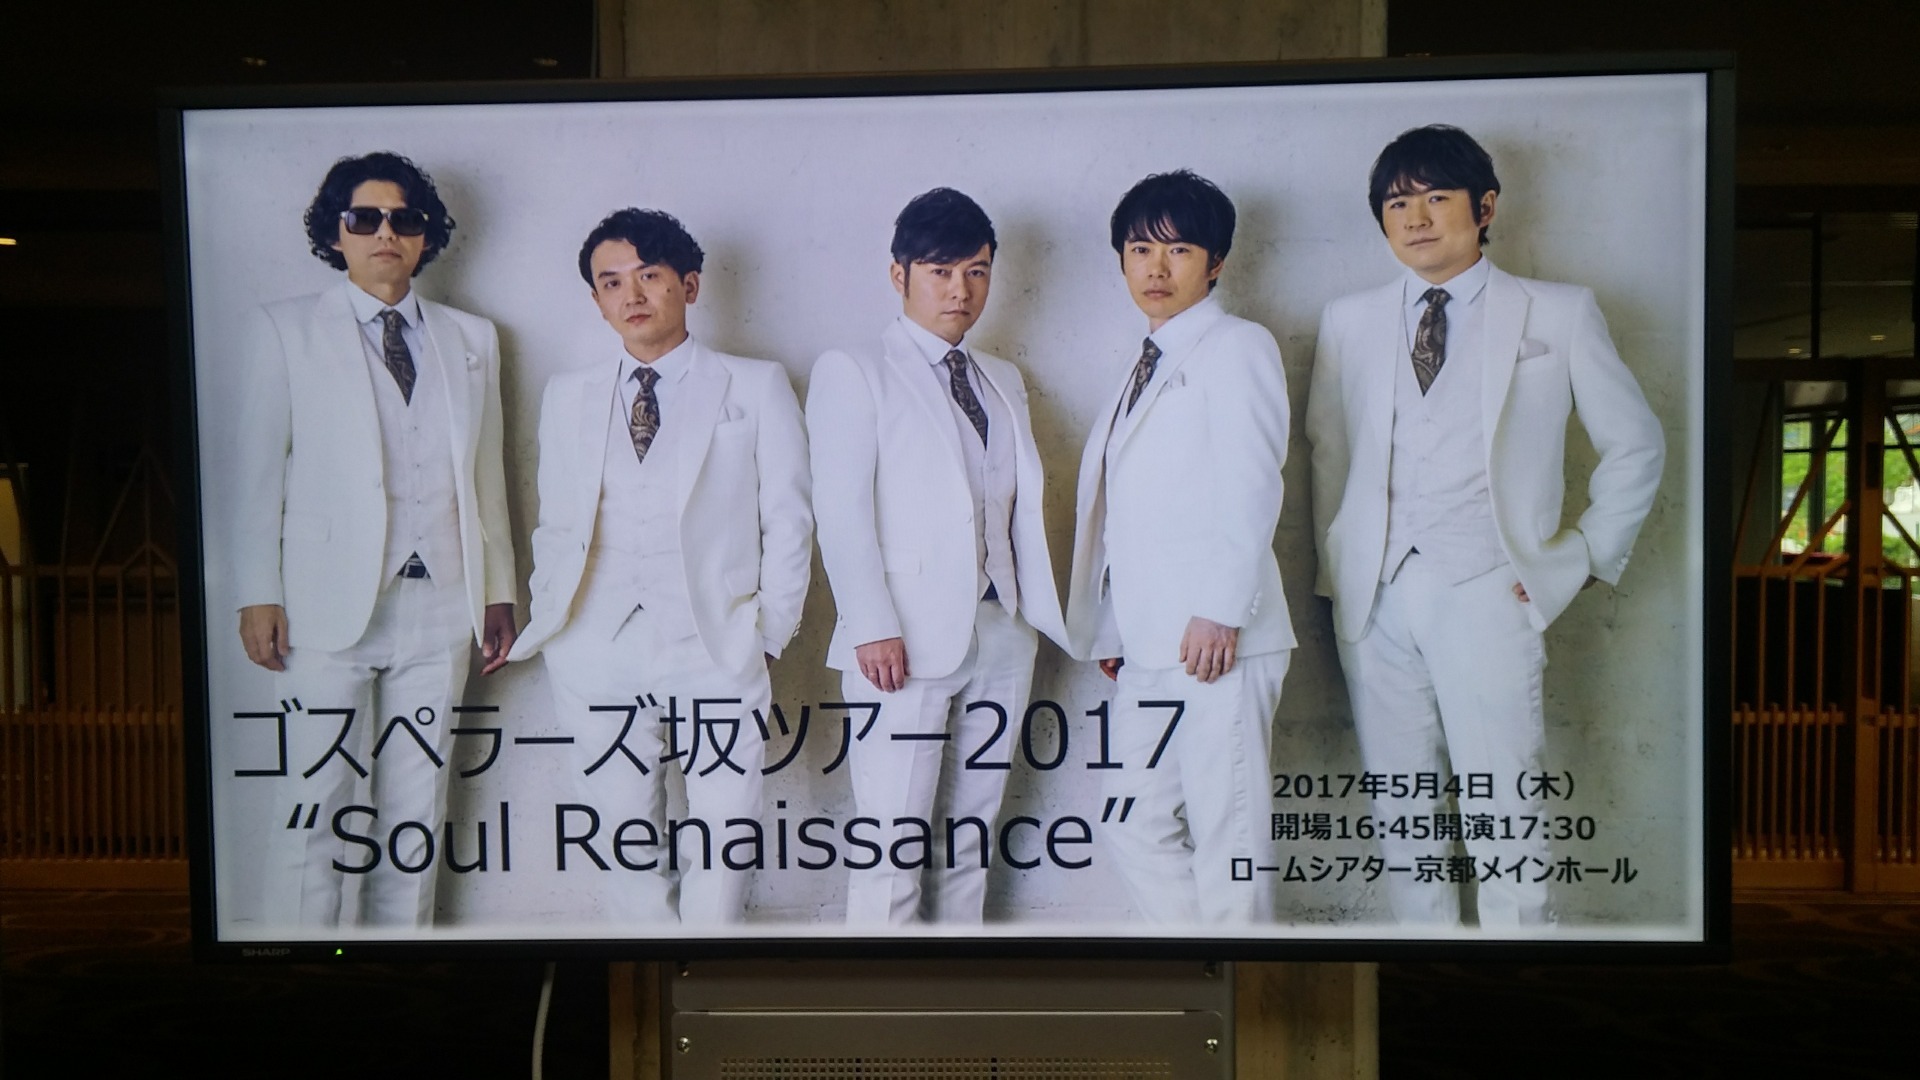 ゴスペラーズ坂ツアー2017 Soul Renaissance in 京都: ゴスマニア25年！